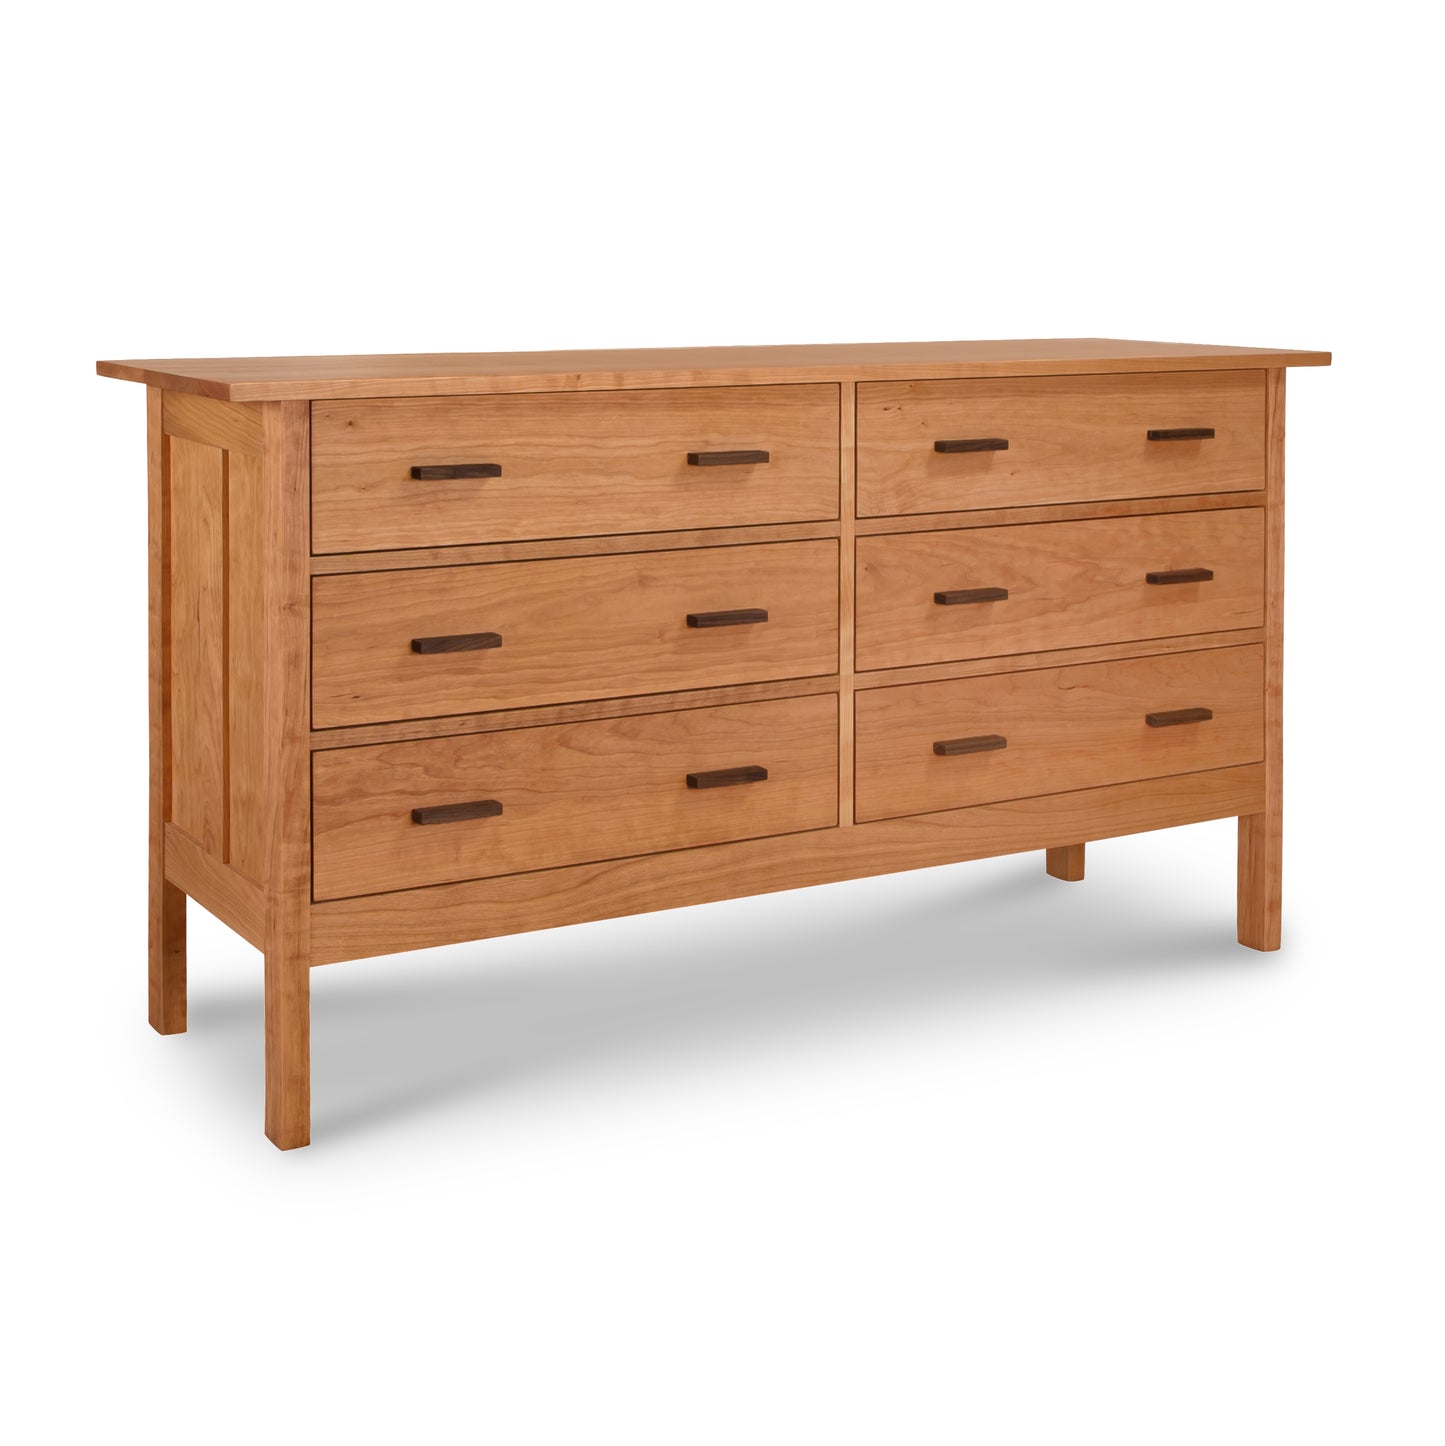 A Vermont Furniture Designs Modern Craftsman 6-Drawer Dresser standing against a white background.